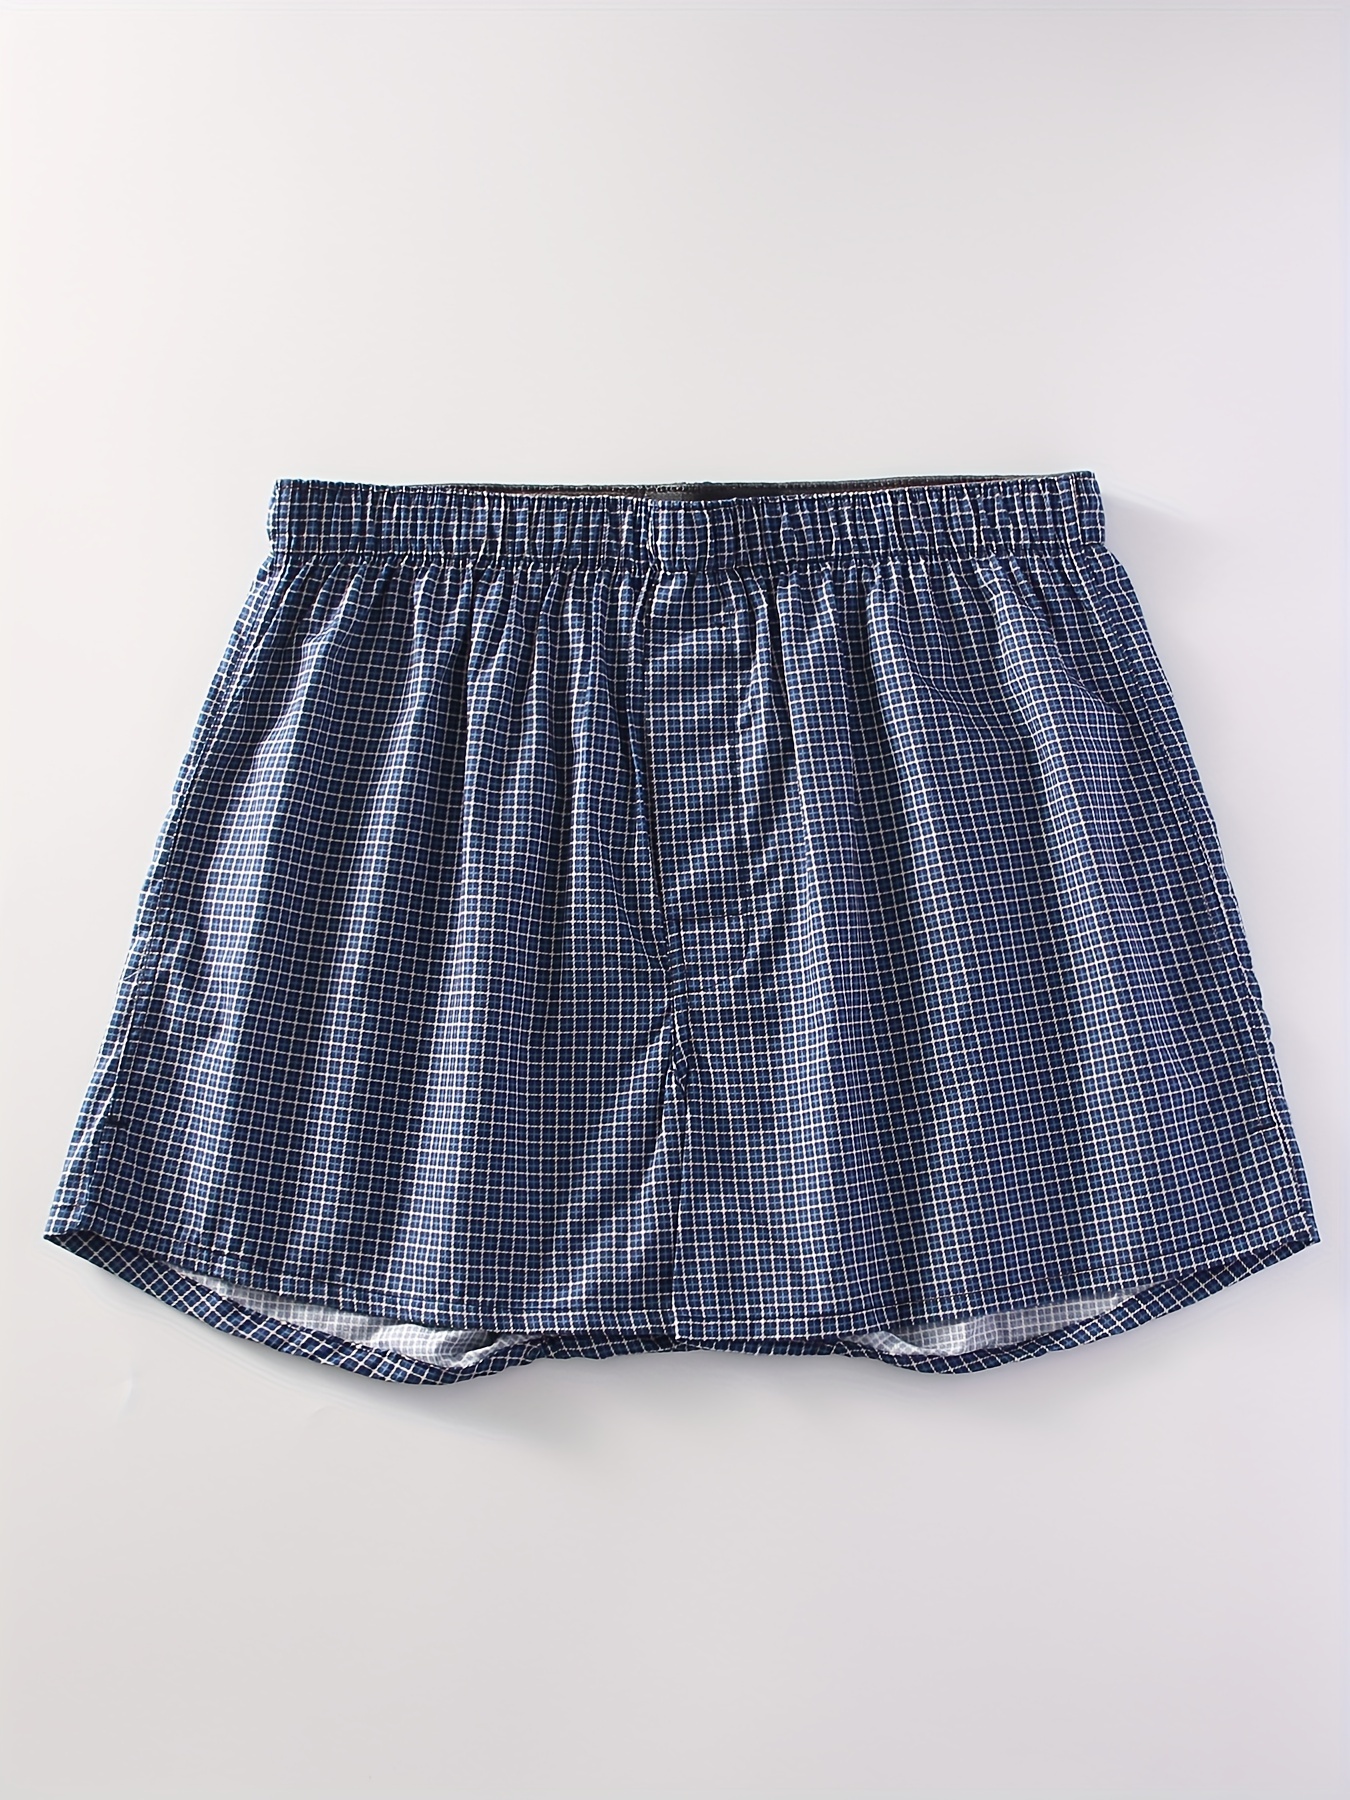 Random Color Men's Underwear Loose Breathable Soft Comfy - Temu